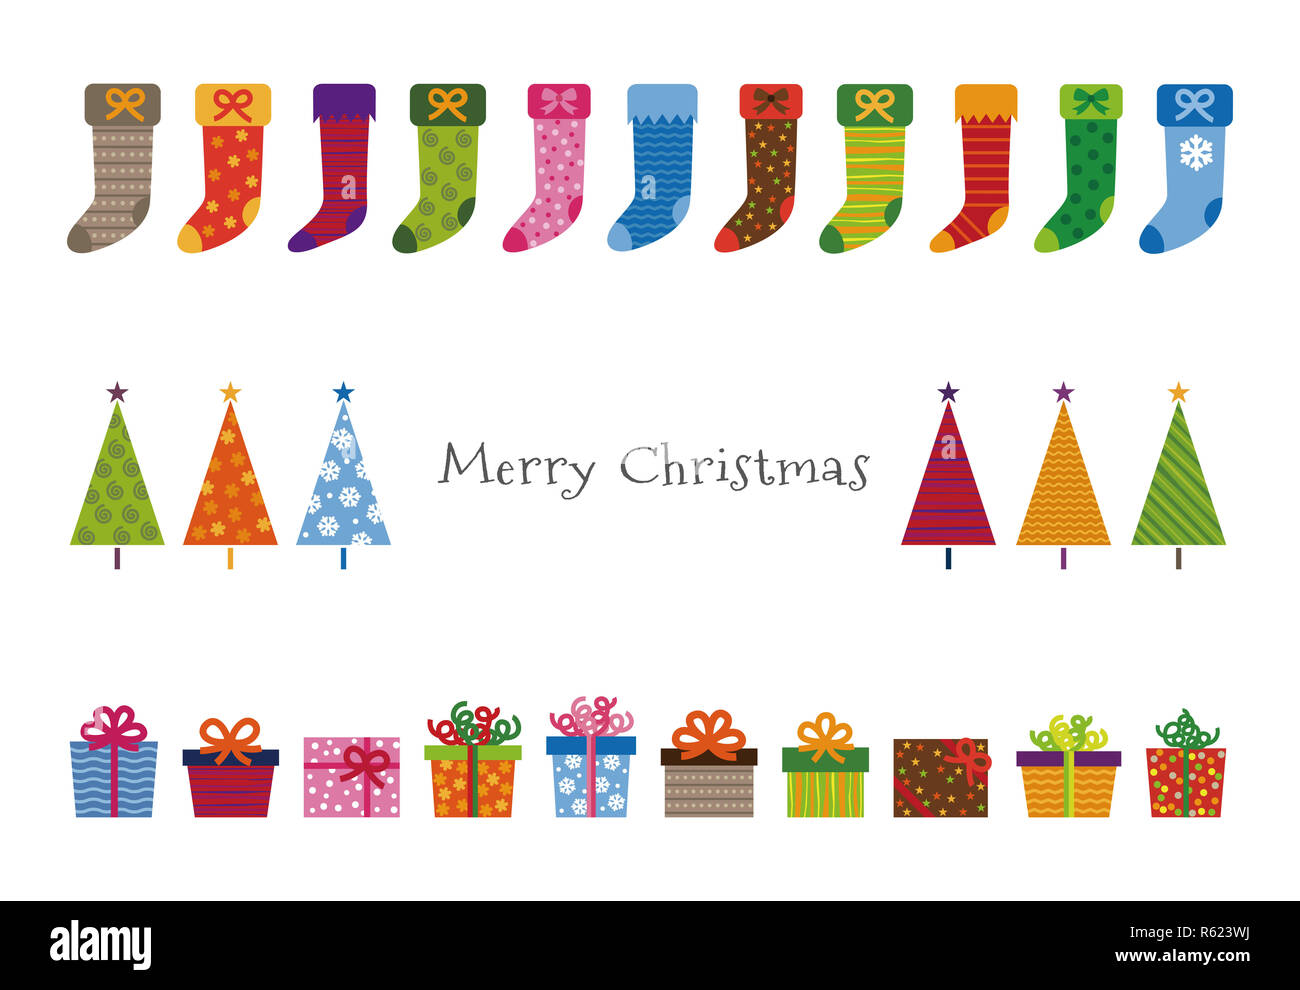 À motifs d'arbres de Noël, cadeaux et cartes de vœux bas Banque D'Images